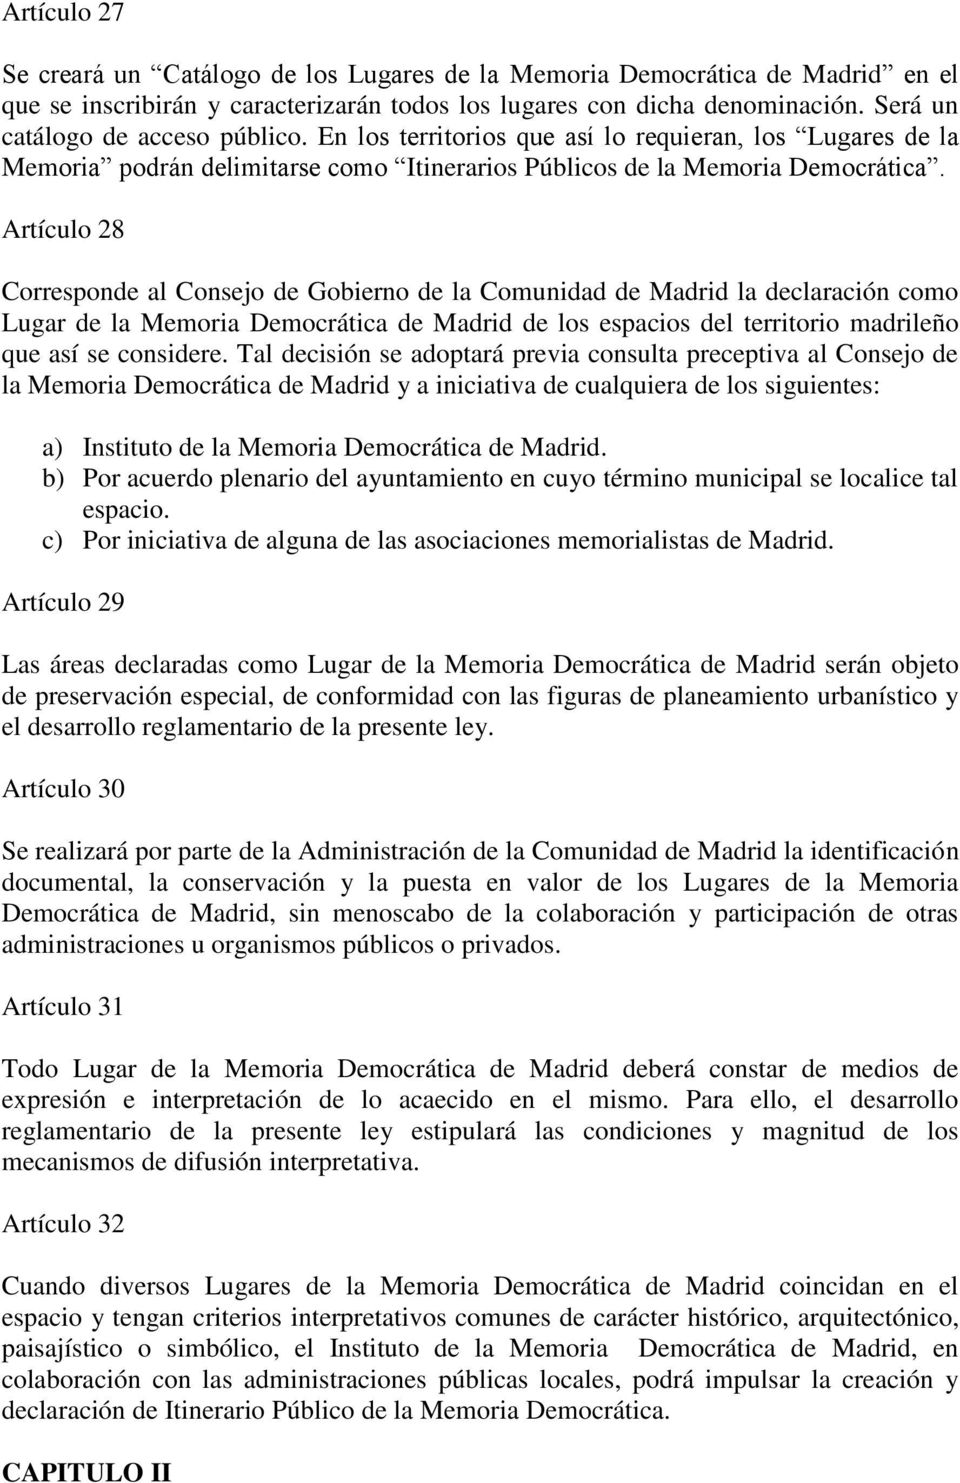 Artículo 28 Corresponde al Consejo de Gobierno de la Comunidad de Madrid la declaración como Lugar de la Memoria Democrática de Madrid de los espacios del territorio madrileño que así se considere.